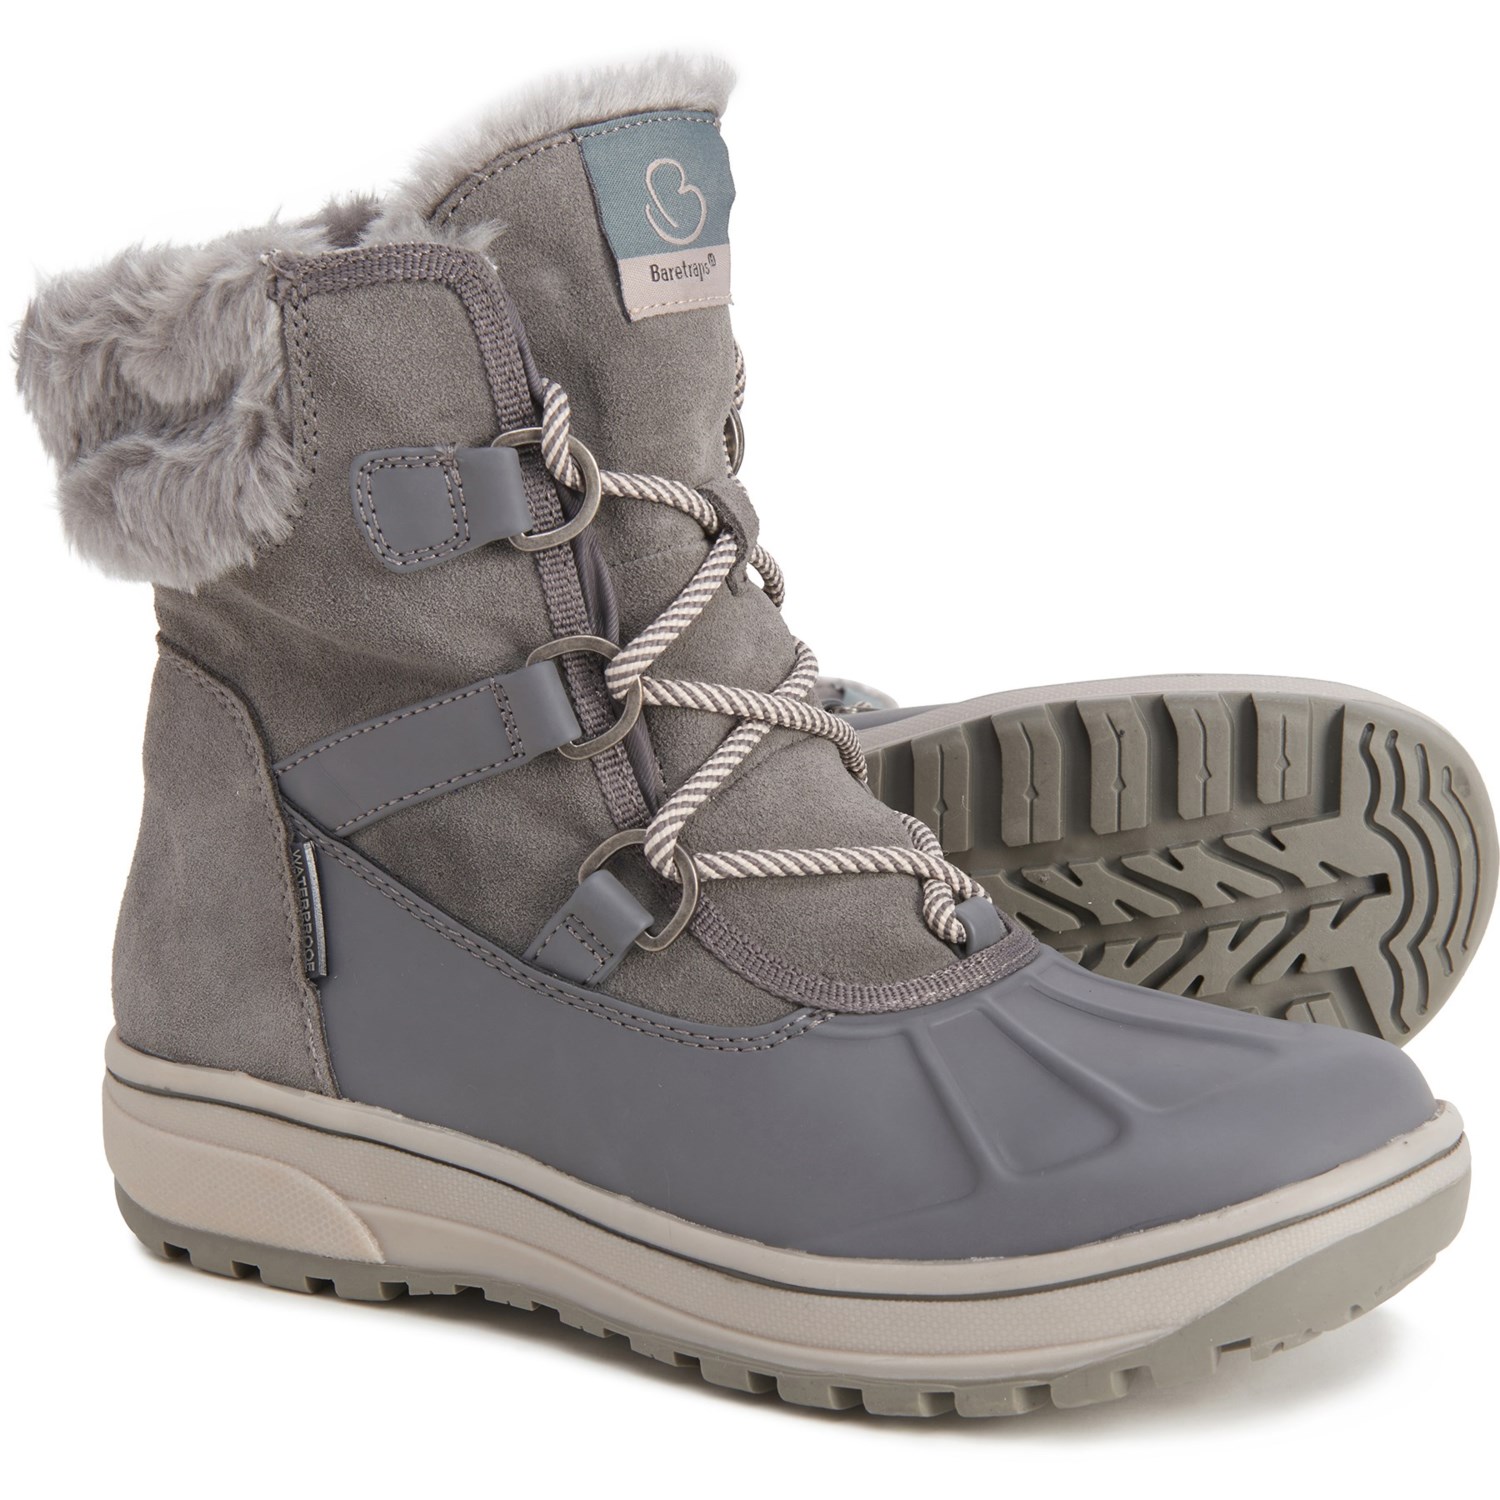 Baretraps Danula Winter Boots (For 